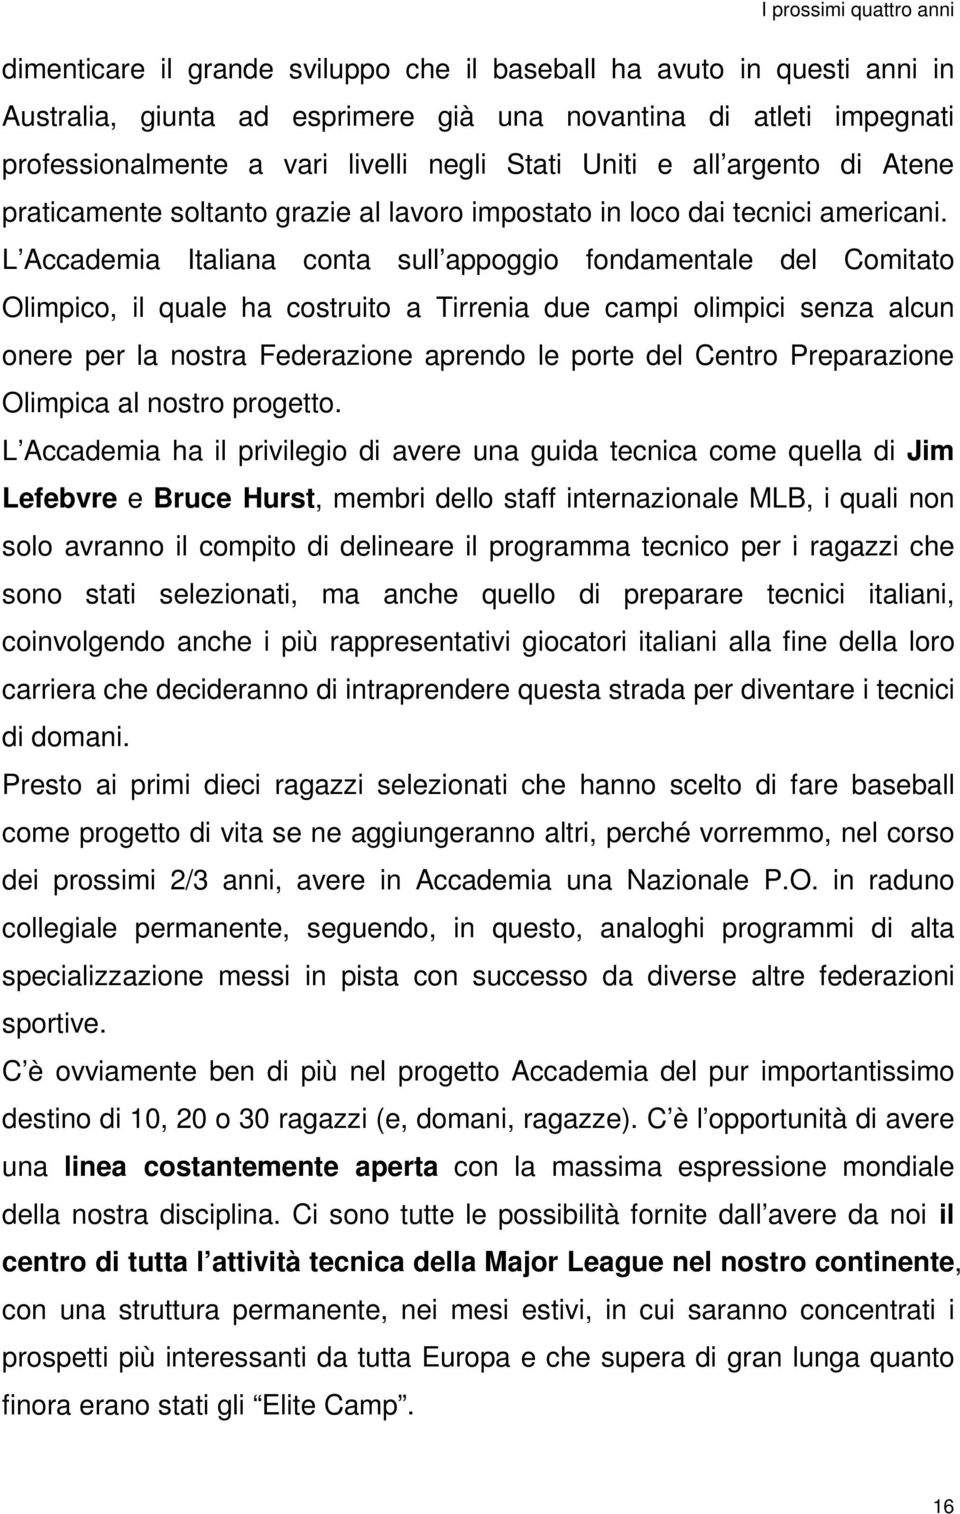 L Accademia Italiana conta sull appoggio fondamentale del Comitato Olimpico, il quale ha costruito a Tirrenia due campi olimpici senza alcun onere per la nostra Federazione aprendo le porte del